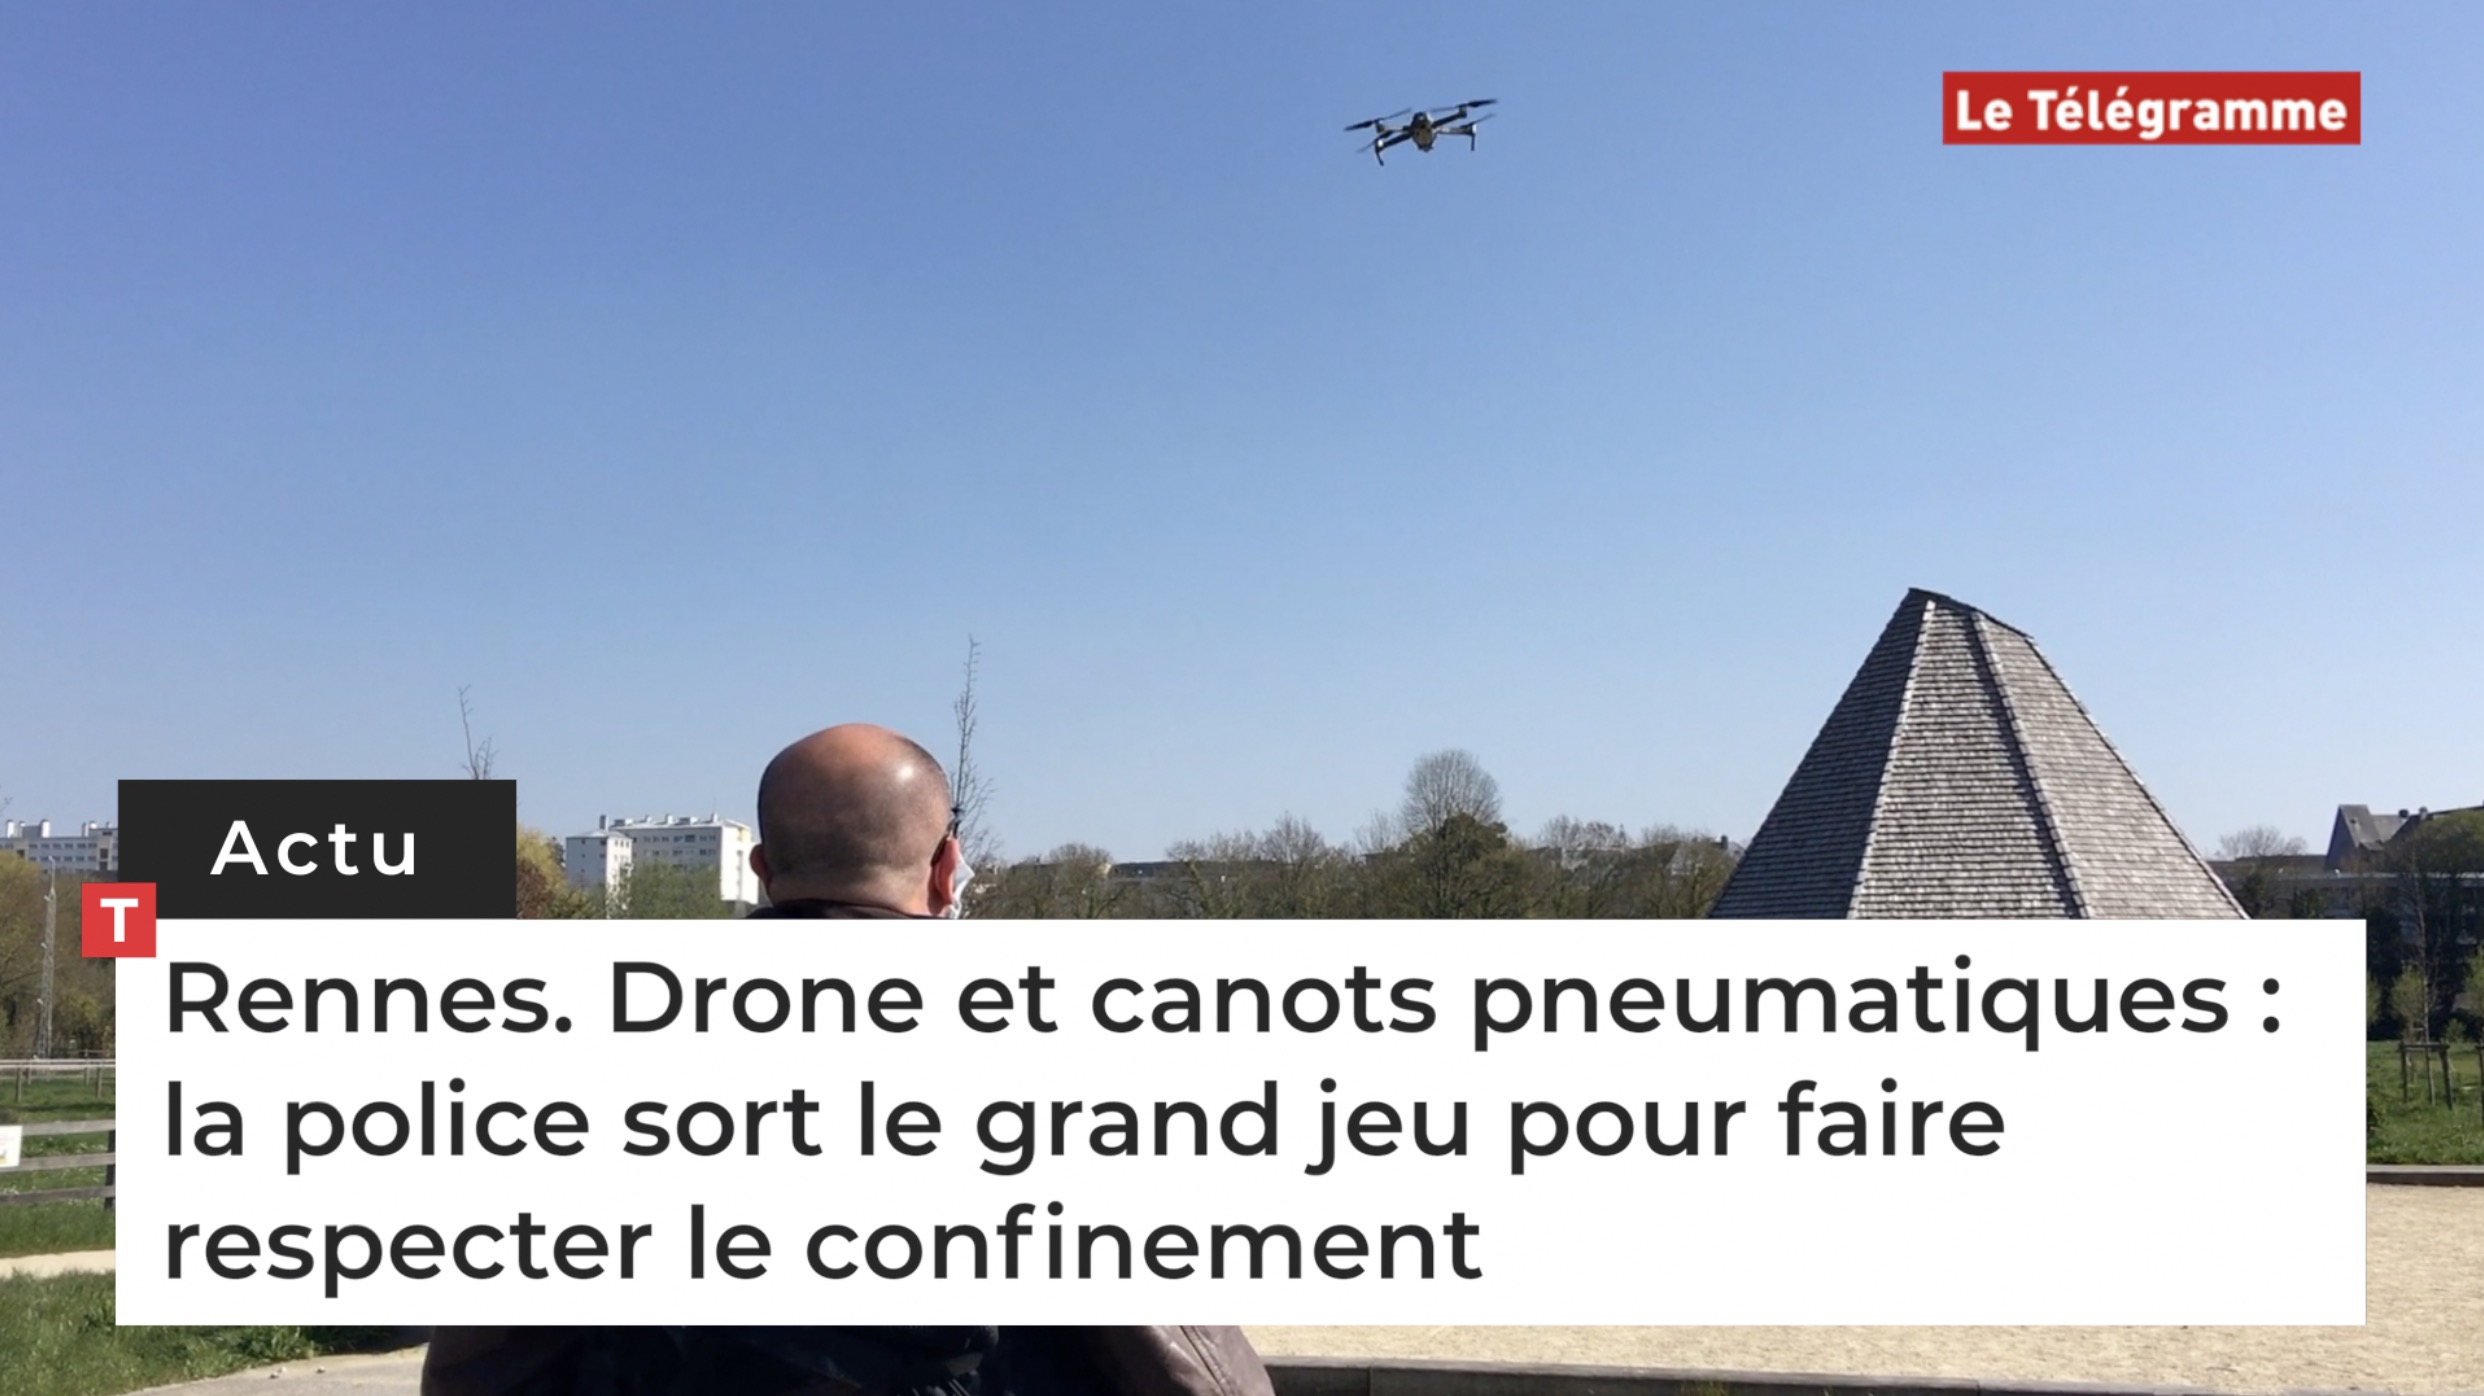 Rennes. Drone et canots pneumatiques : la police sort le grand jeu pour faire respecter le confinement (Le Télégramme)